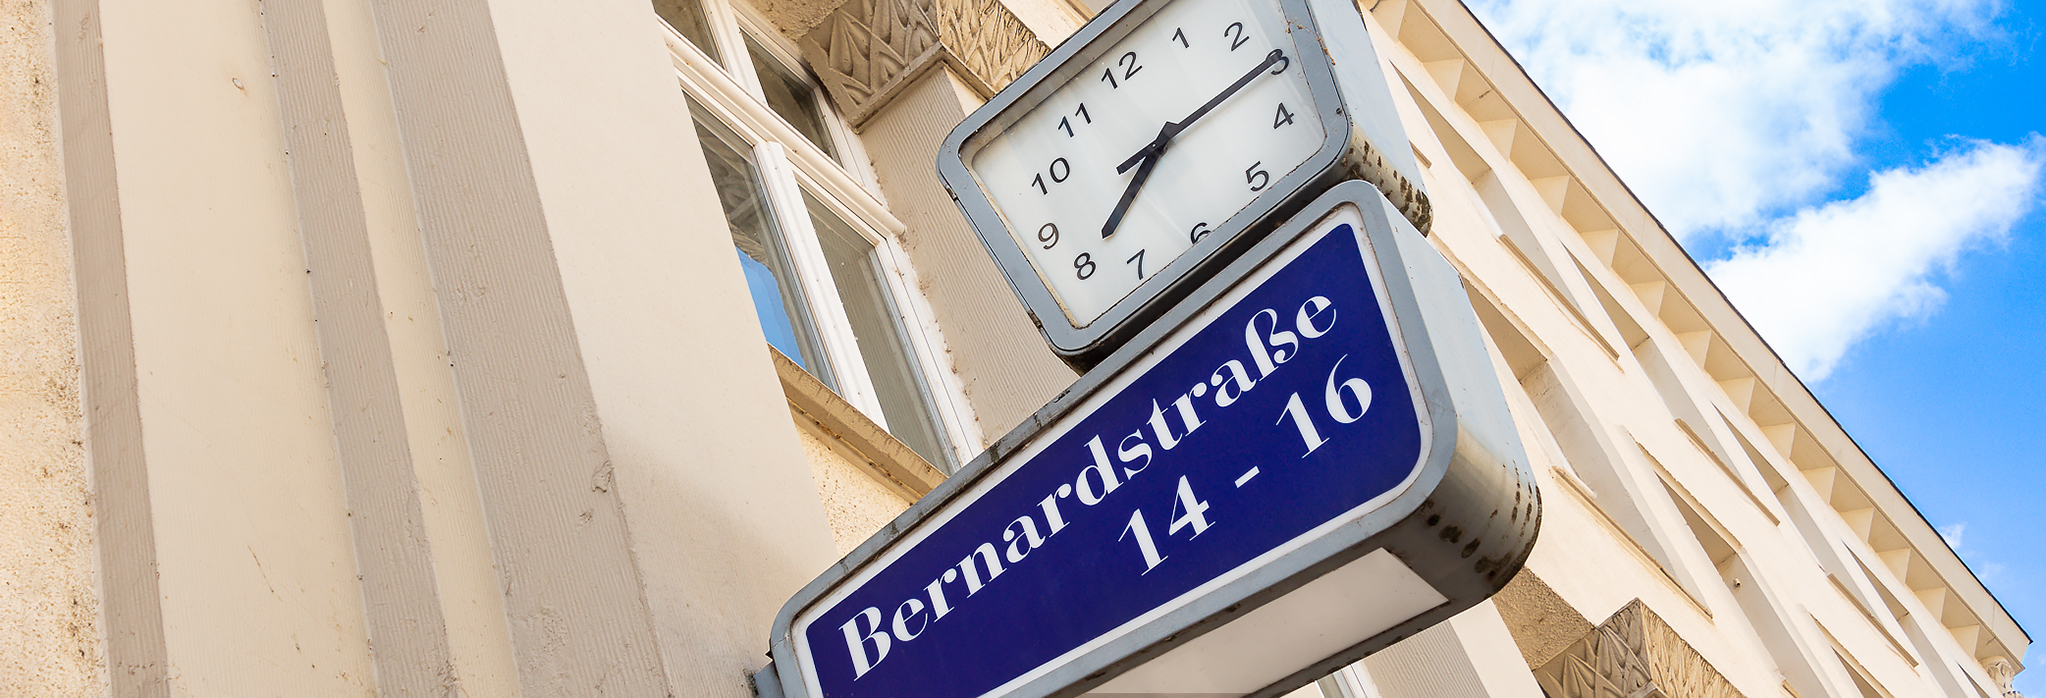 Uhr an der Hausfassade der Bernardstraße 14-16